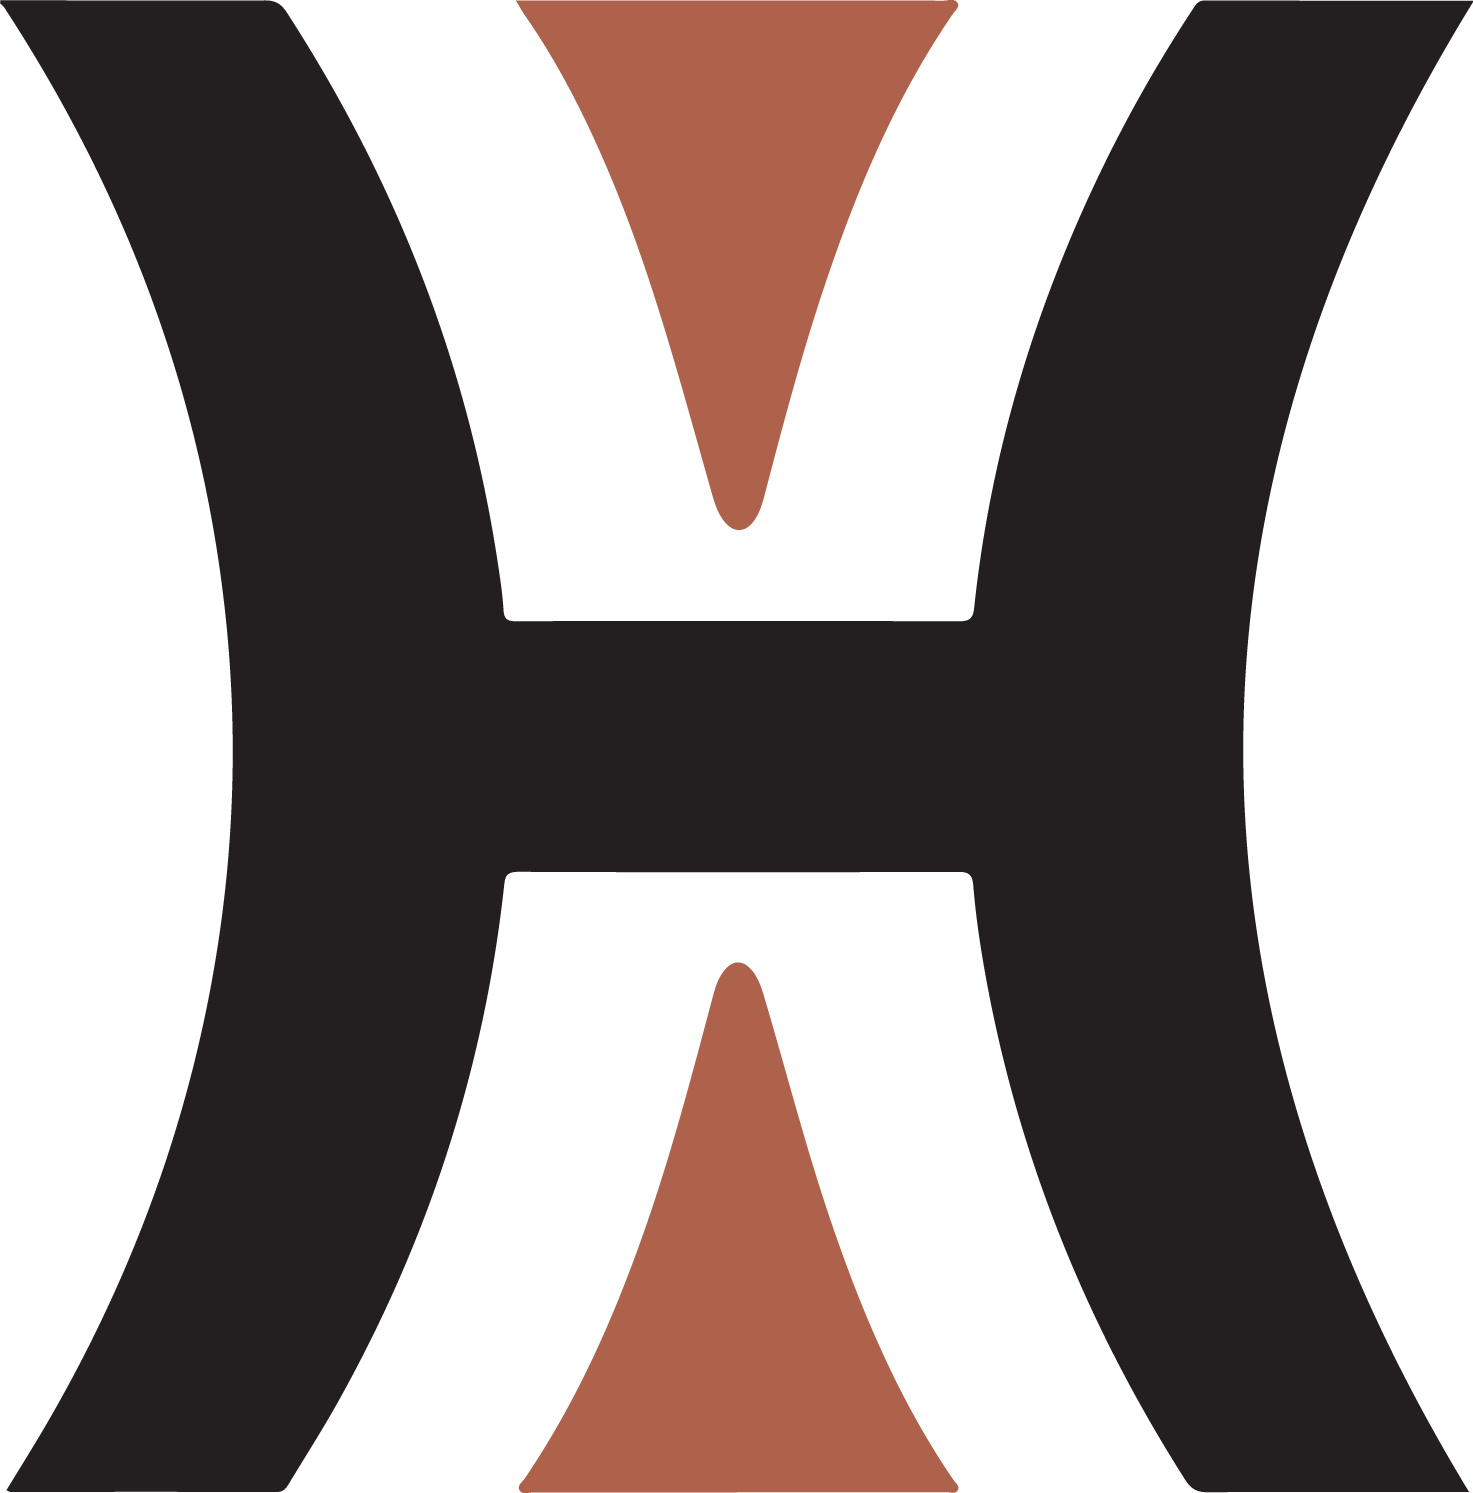 Hercules Capital Logo